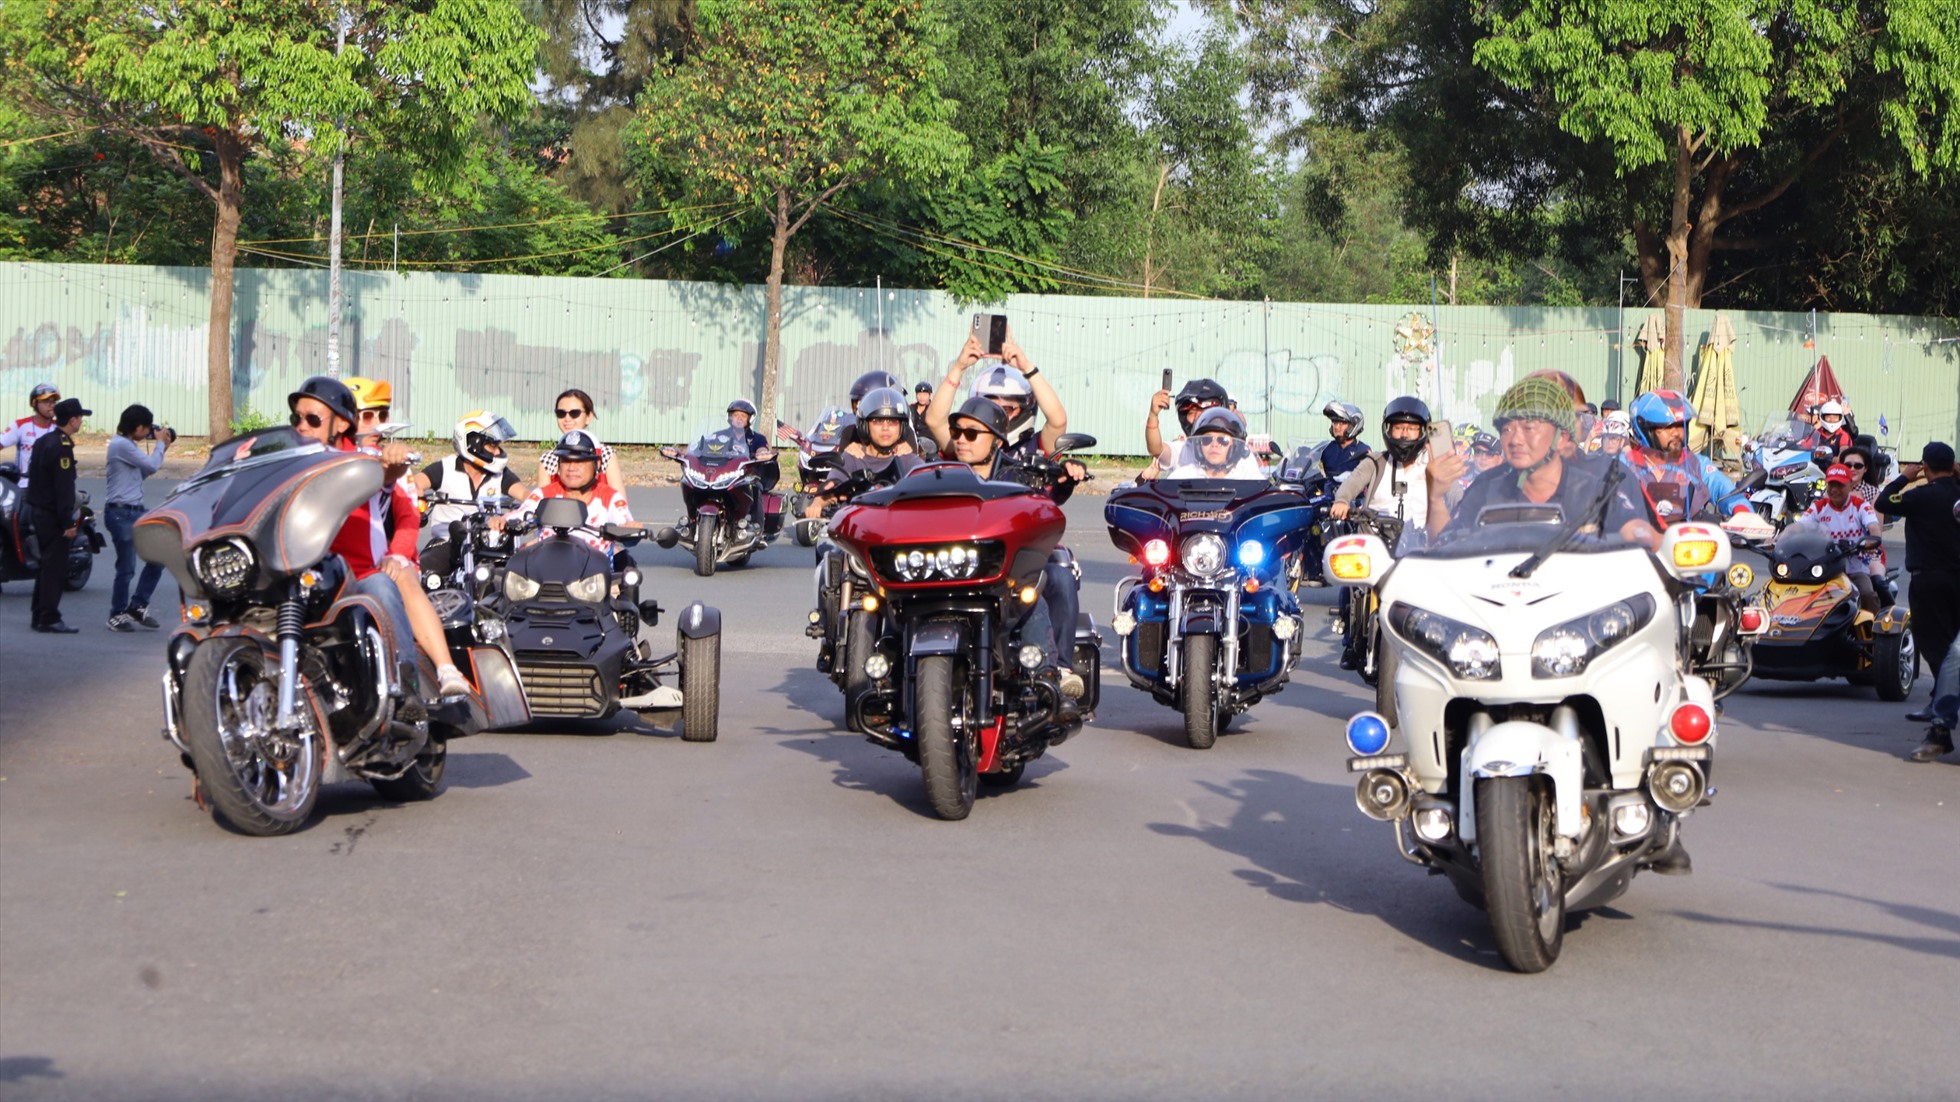 Theo Ban Tổ chức, Đại hội Moto năm nay không chỉ là cơ hội giao lưu dành riêng cho các tay lái khu vực ĐBSCL mà còn có cả các anh em “biker” khắp 3 miền Bắc, Trung, Nam; với tổng khoảng 1.100 biker, 1.000 xe phân khối lớn và gần 100 CLB, hội, nhóm moto trên cả nước cùng quy tụ về.